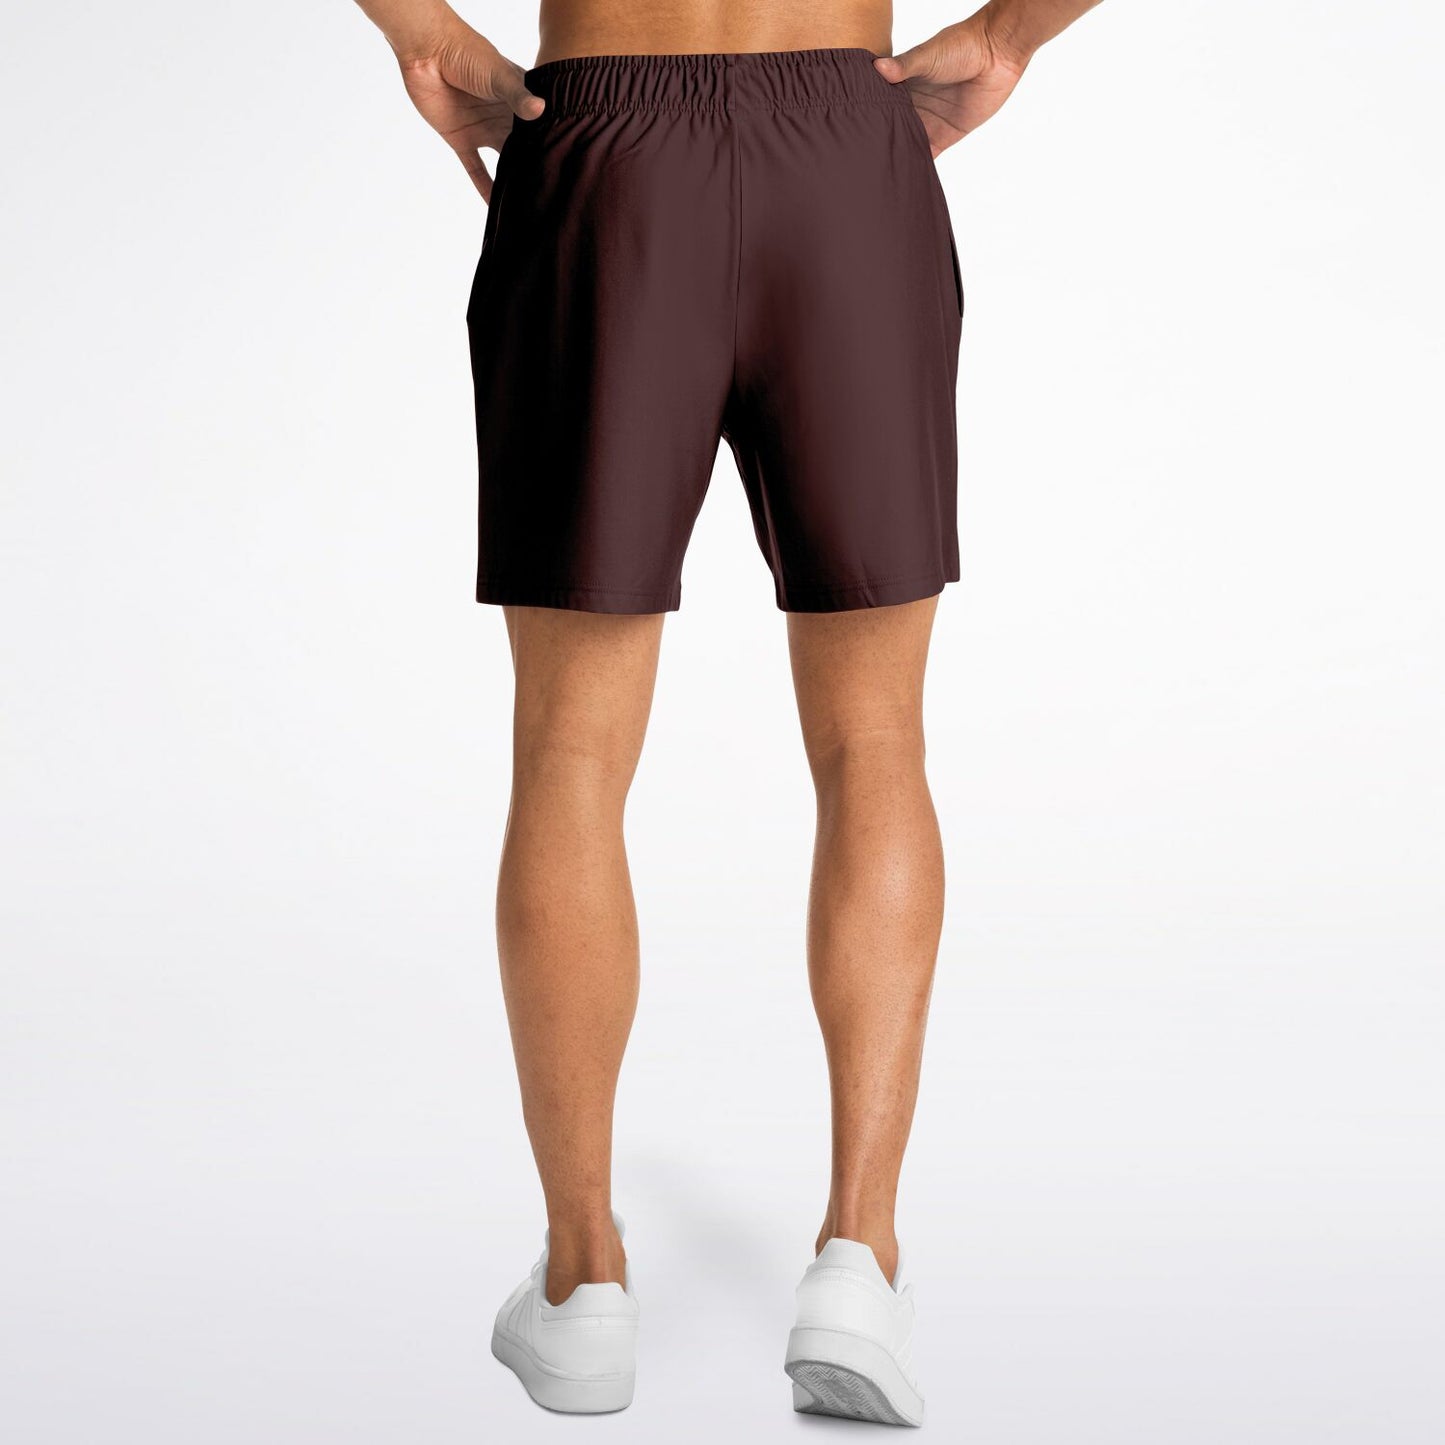 San Diego Men's Brown Shorts